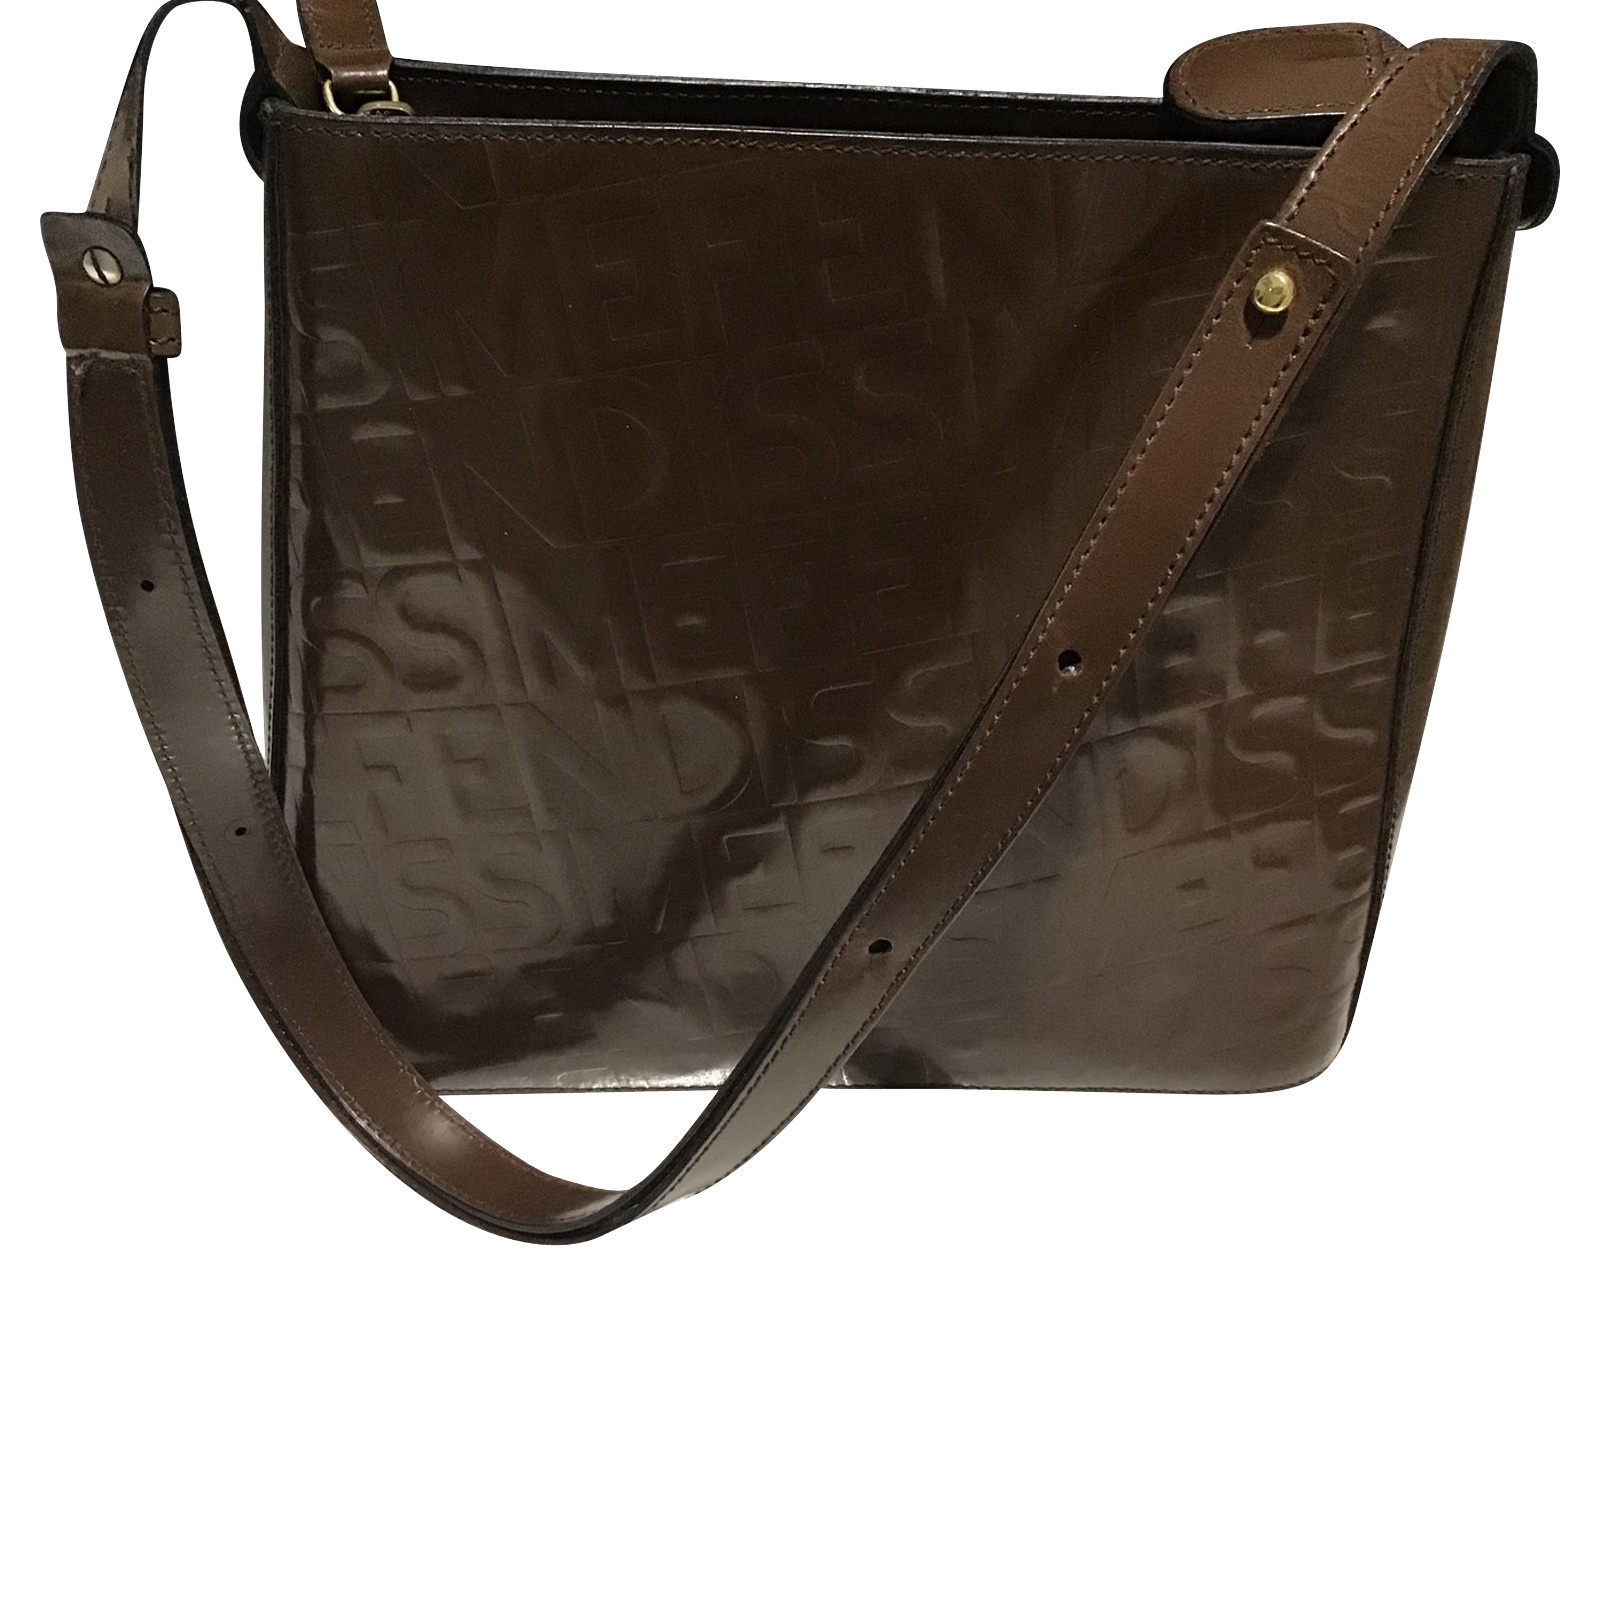 Fendi Shoulder bag Leather in Brown - Second Hand Fendi Shoulder bag  Leather in Brown buy used for 170€ (4155027)